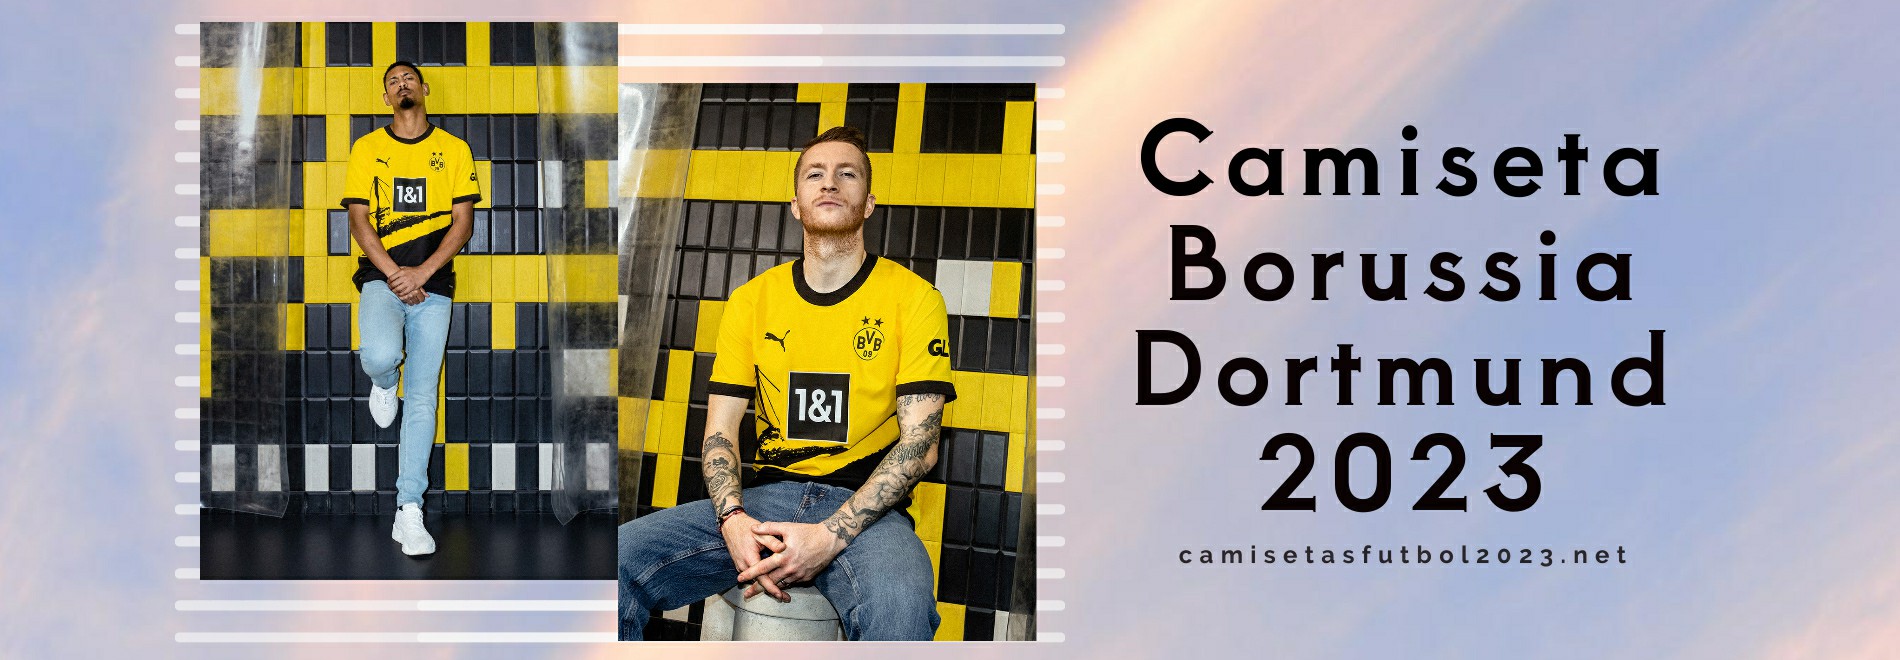 Camiseta Borussia Dortmund 2023-2024